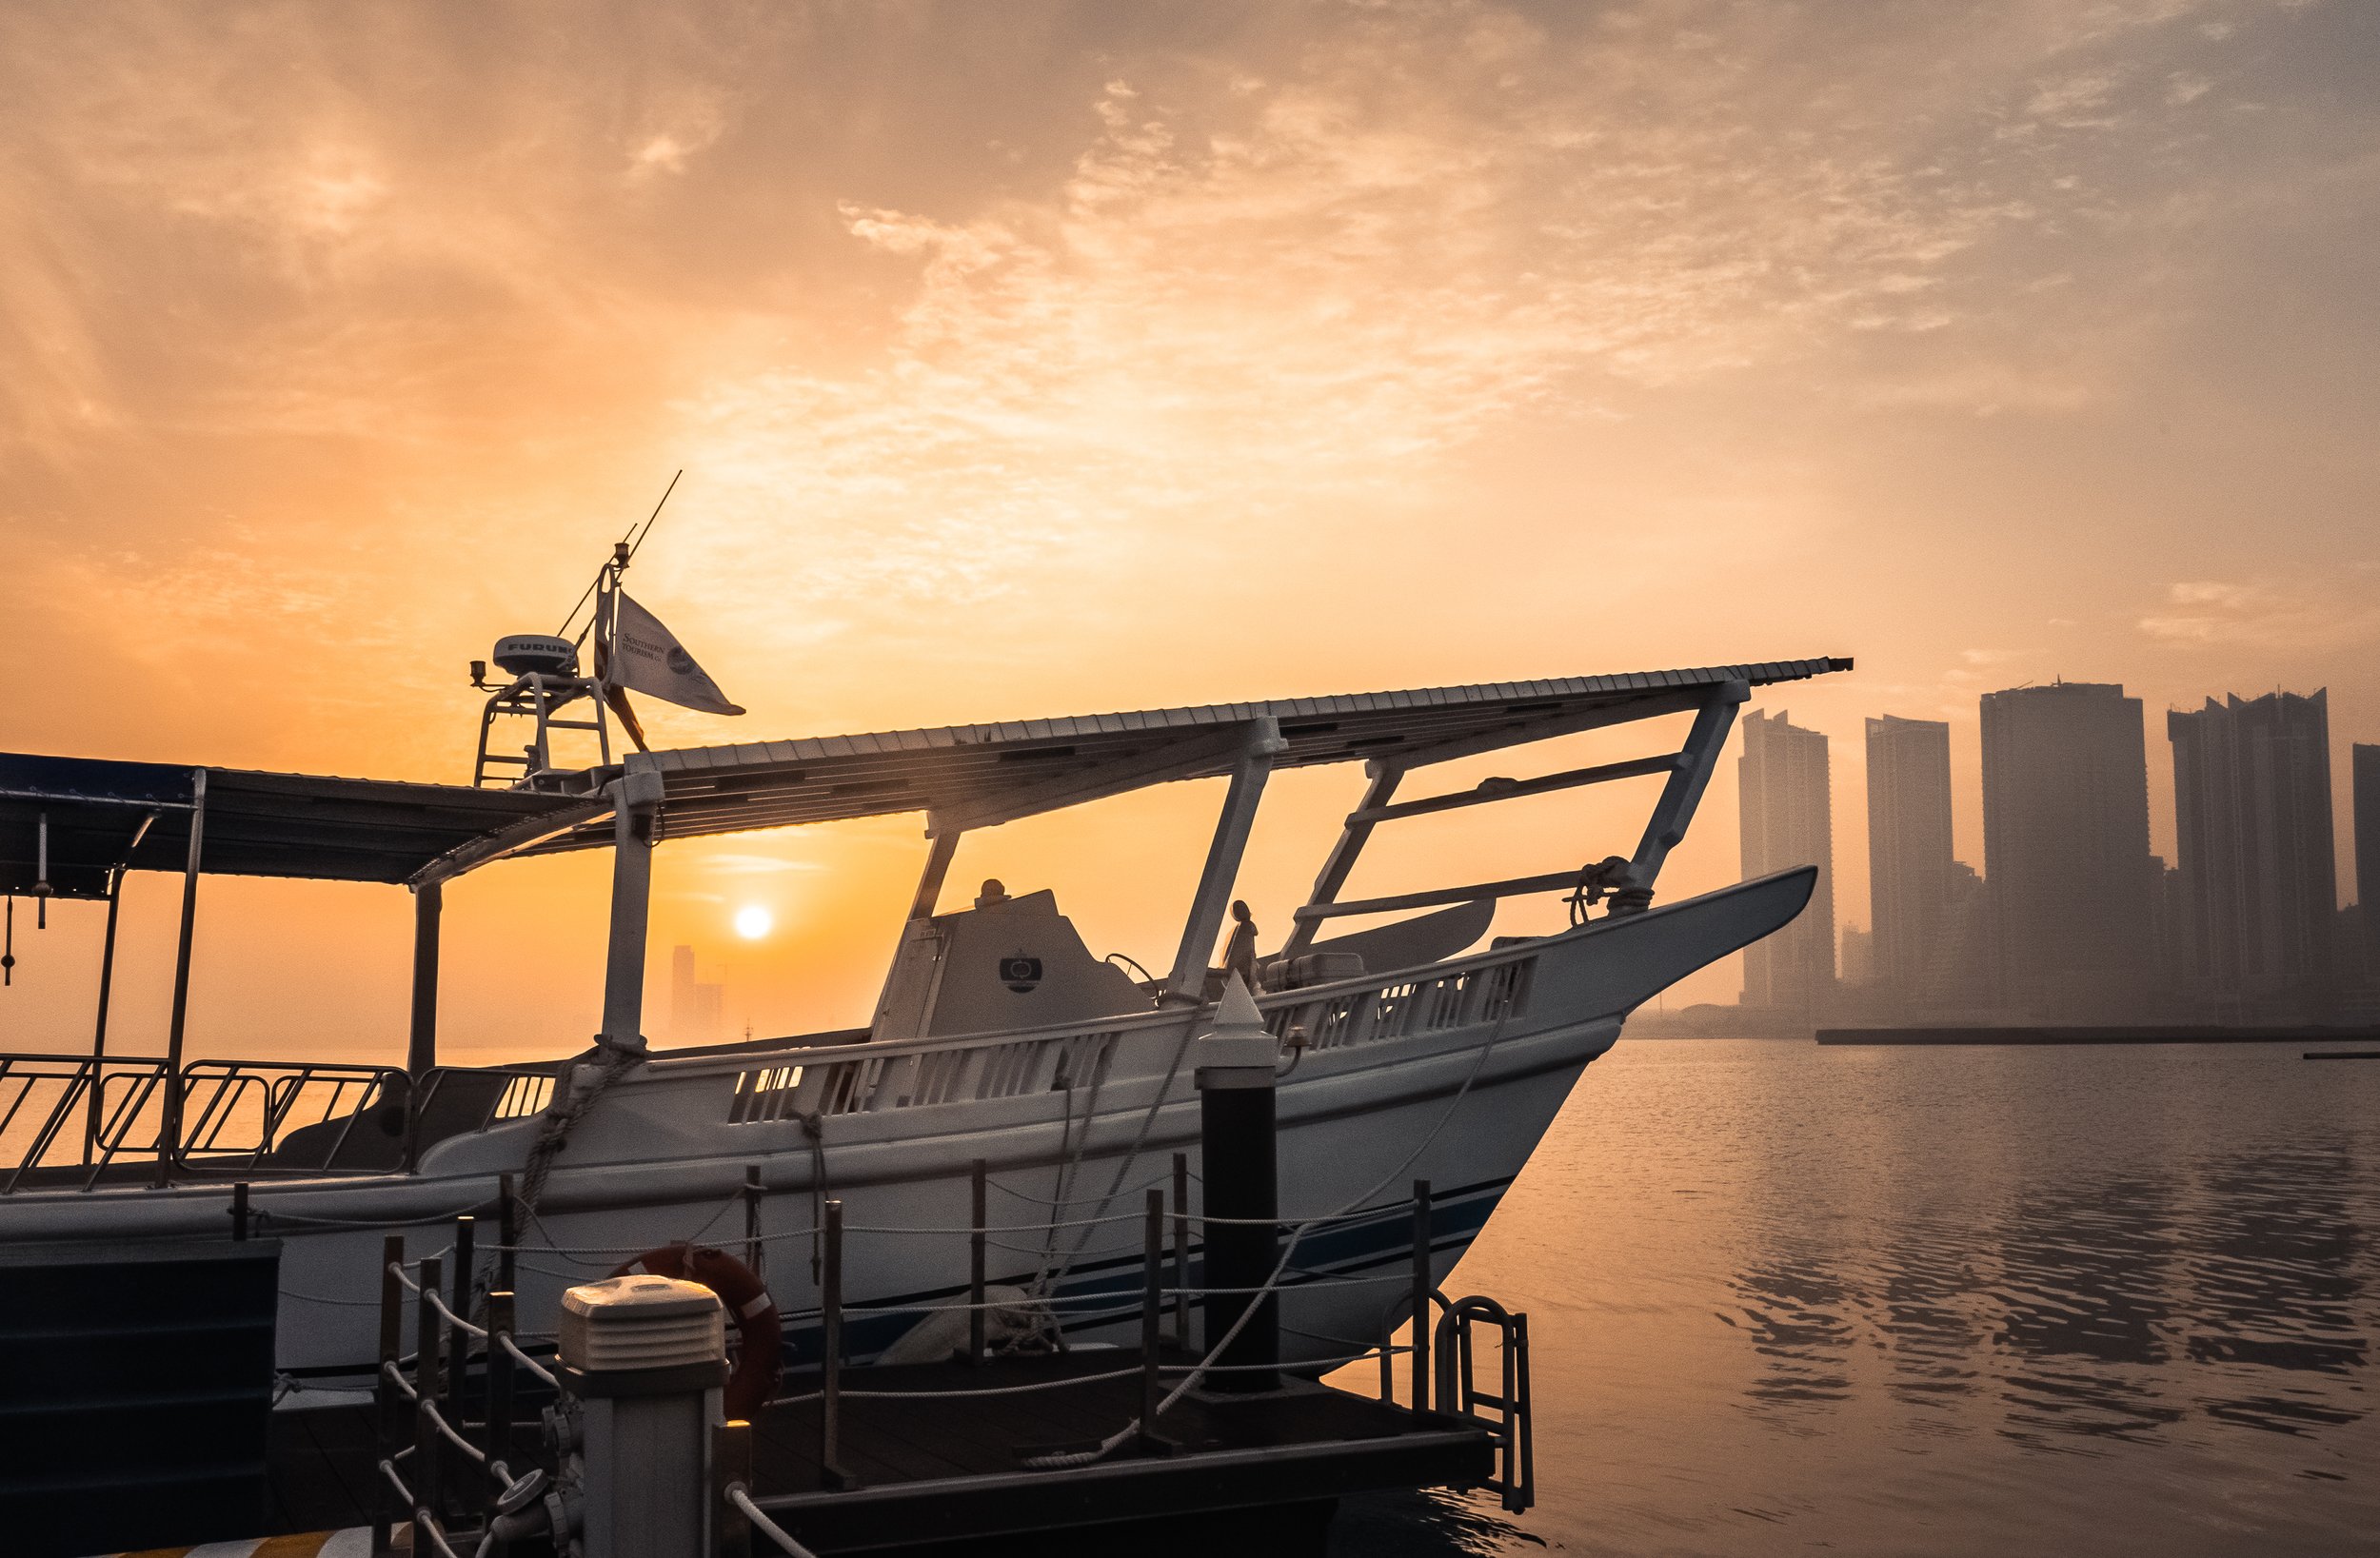 Boat sunset.jpg